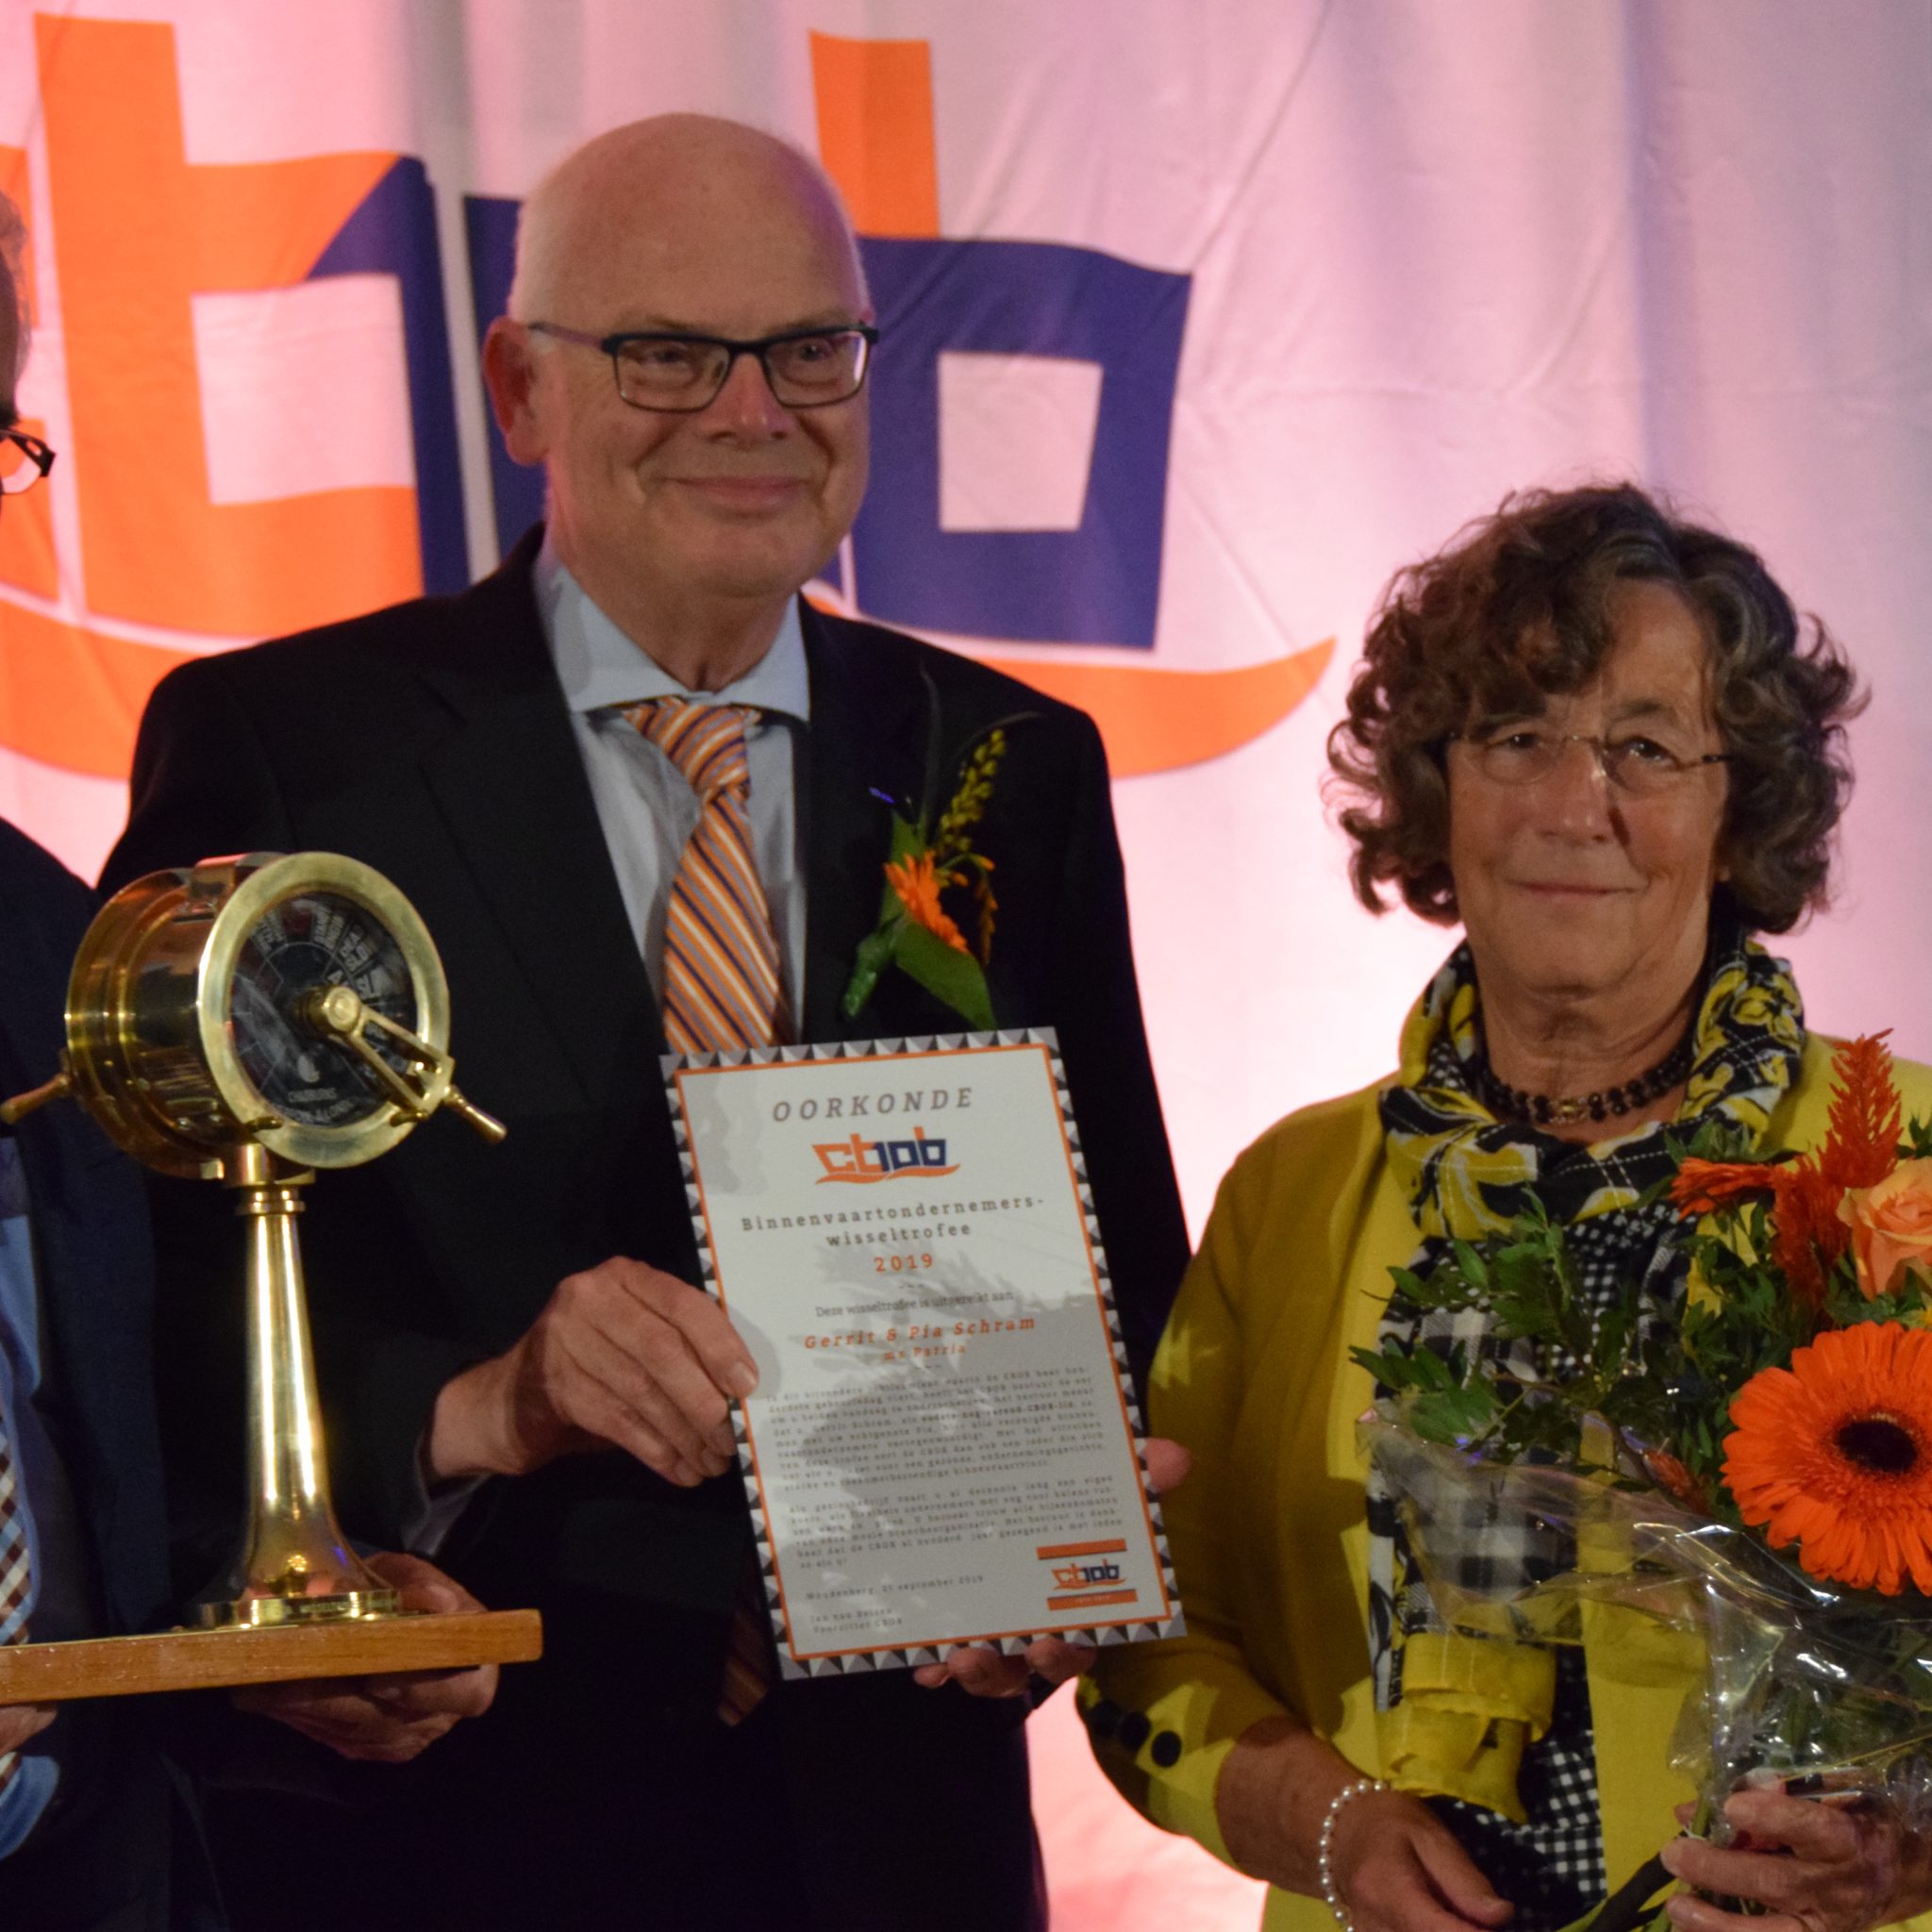 Al bijna 58 jaar is Gerrit Schram (links) lid van het CBOB. Als oudste nog varende lid kreeg hij de Binnenvaartondernemers Wisseltrofee uit handen van voorzitter Jan van Belzen (midden, met oorkonde). Schippersvrouw Pia Schram deelt volledig in de eer voor het varend familiebedrijf. (Foto Dirk van der Meulen)